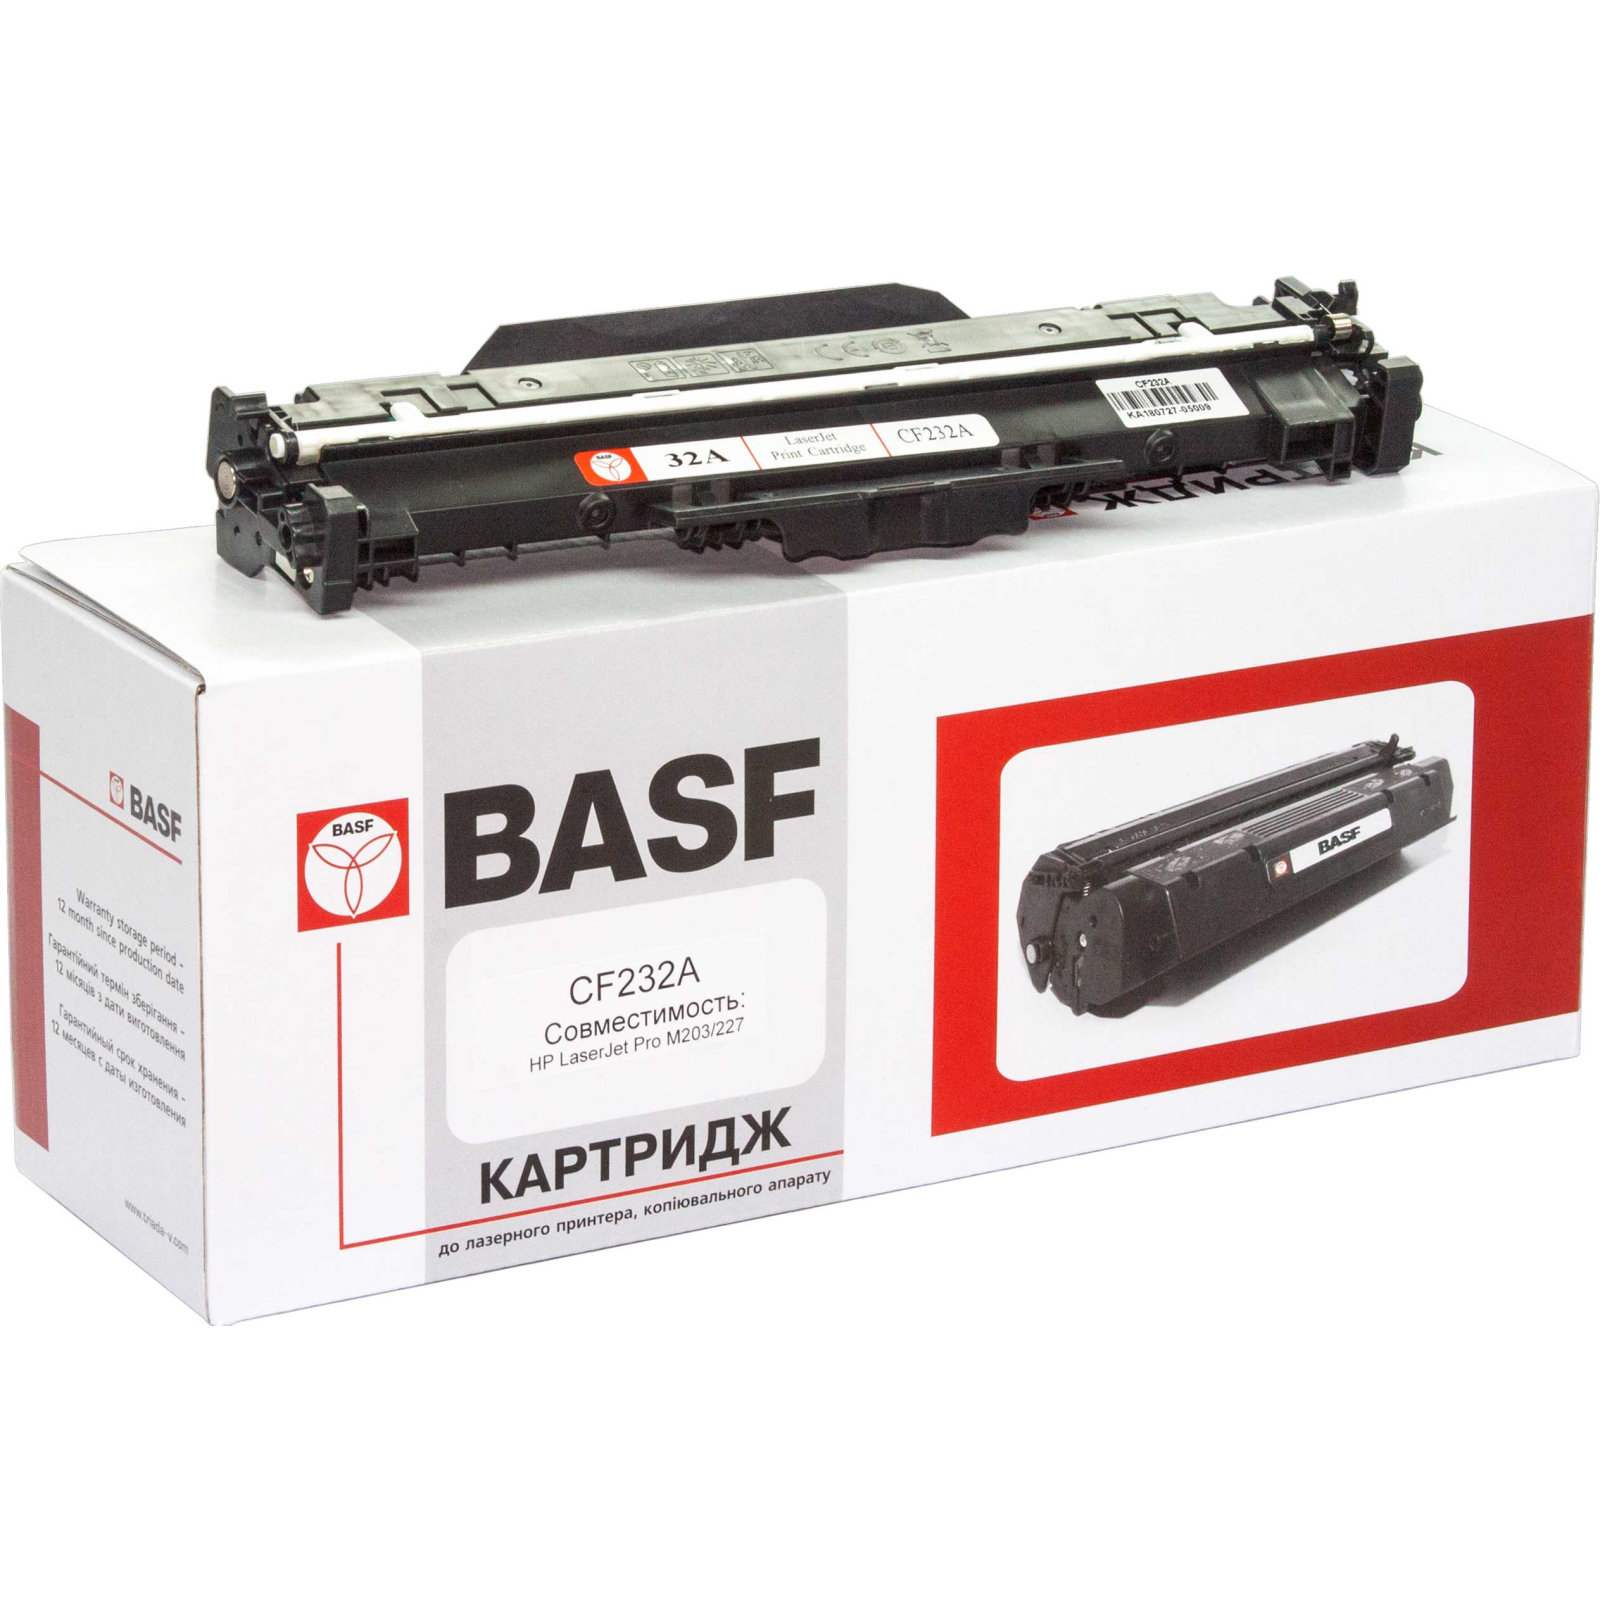 Драм картридж BASF HP LaserJet Pro M203/227 (DR-CF232A) зображення 2